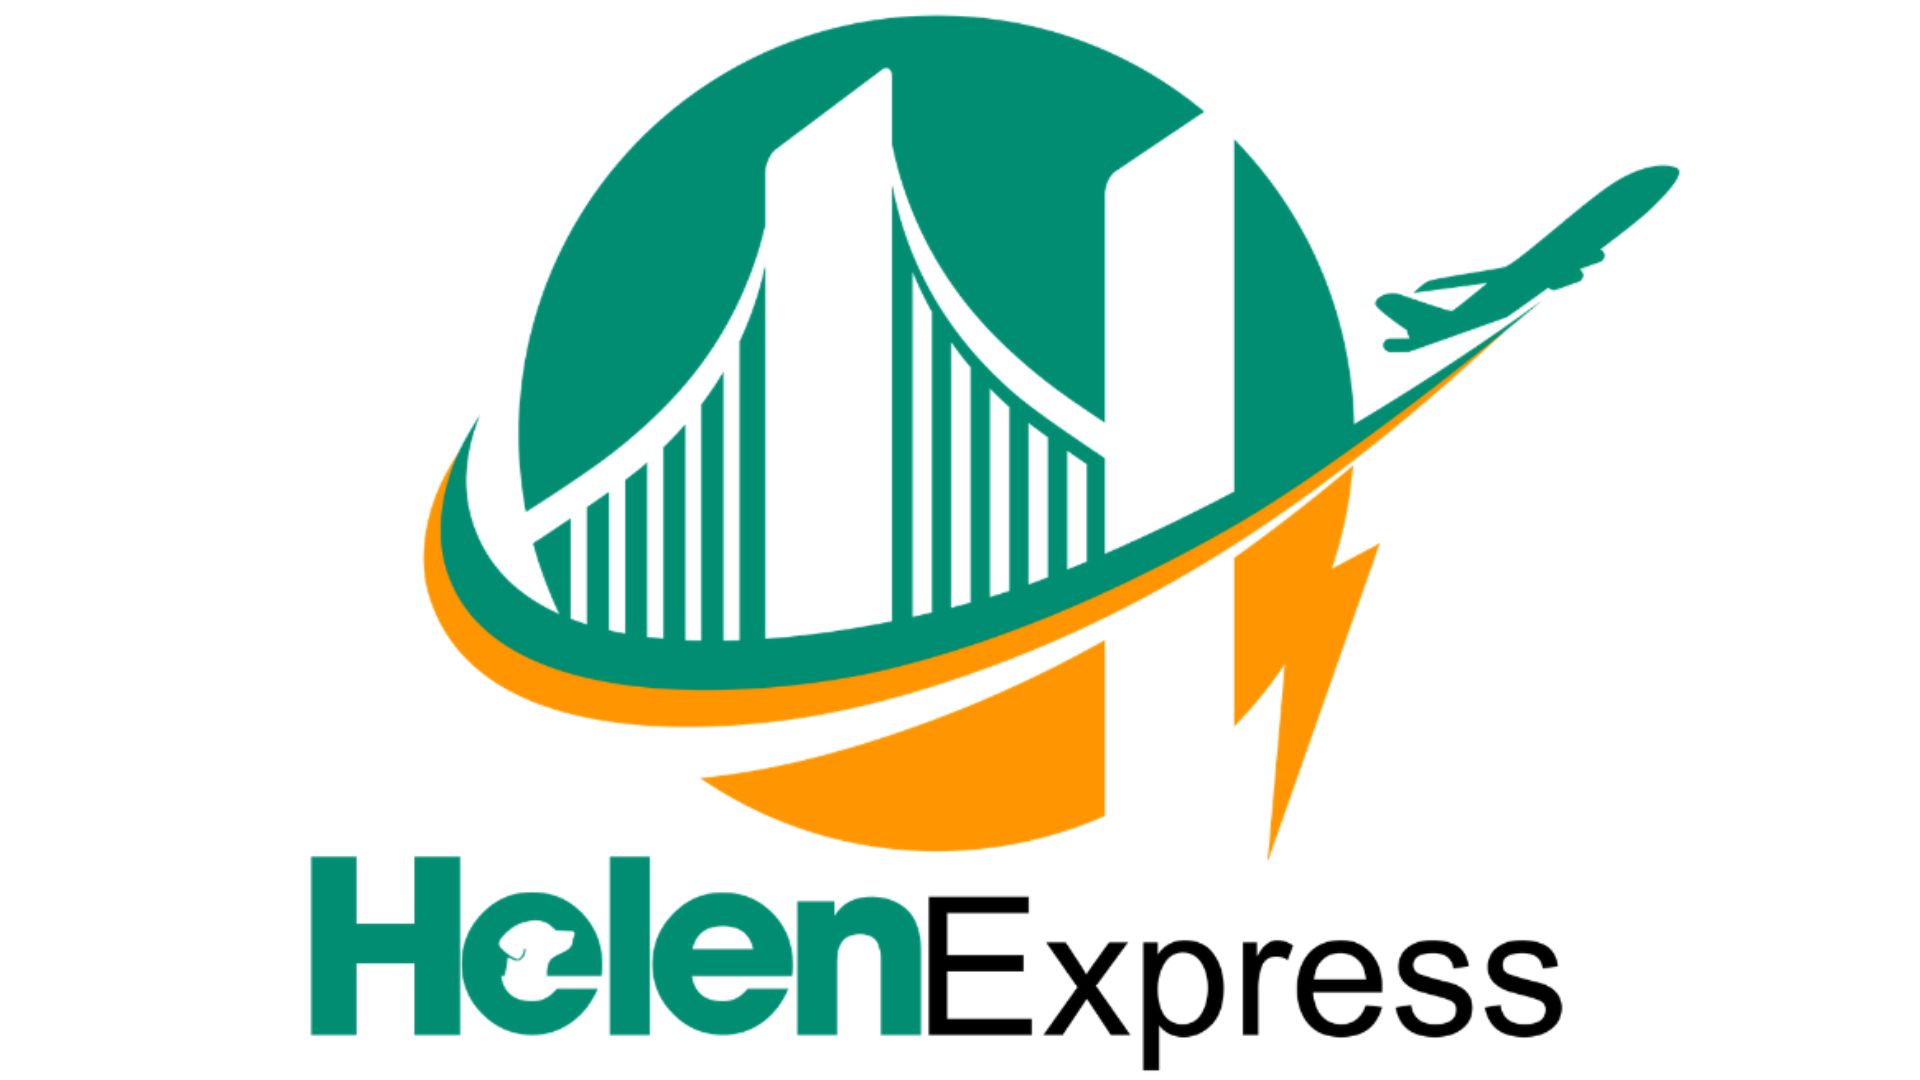 Helen Express - Địa điểm gửi hàng đi Mỹ tại Đà Nẵng giá rẻ